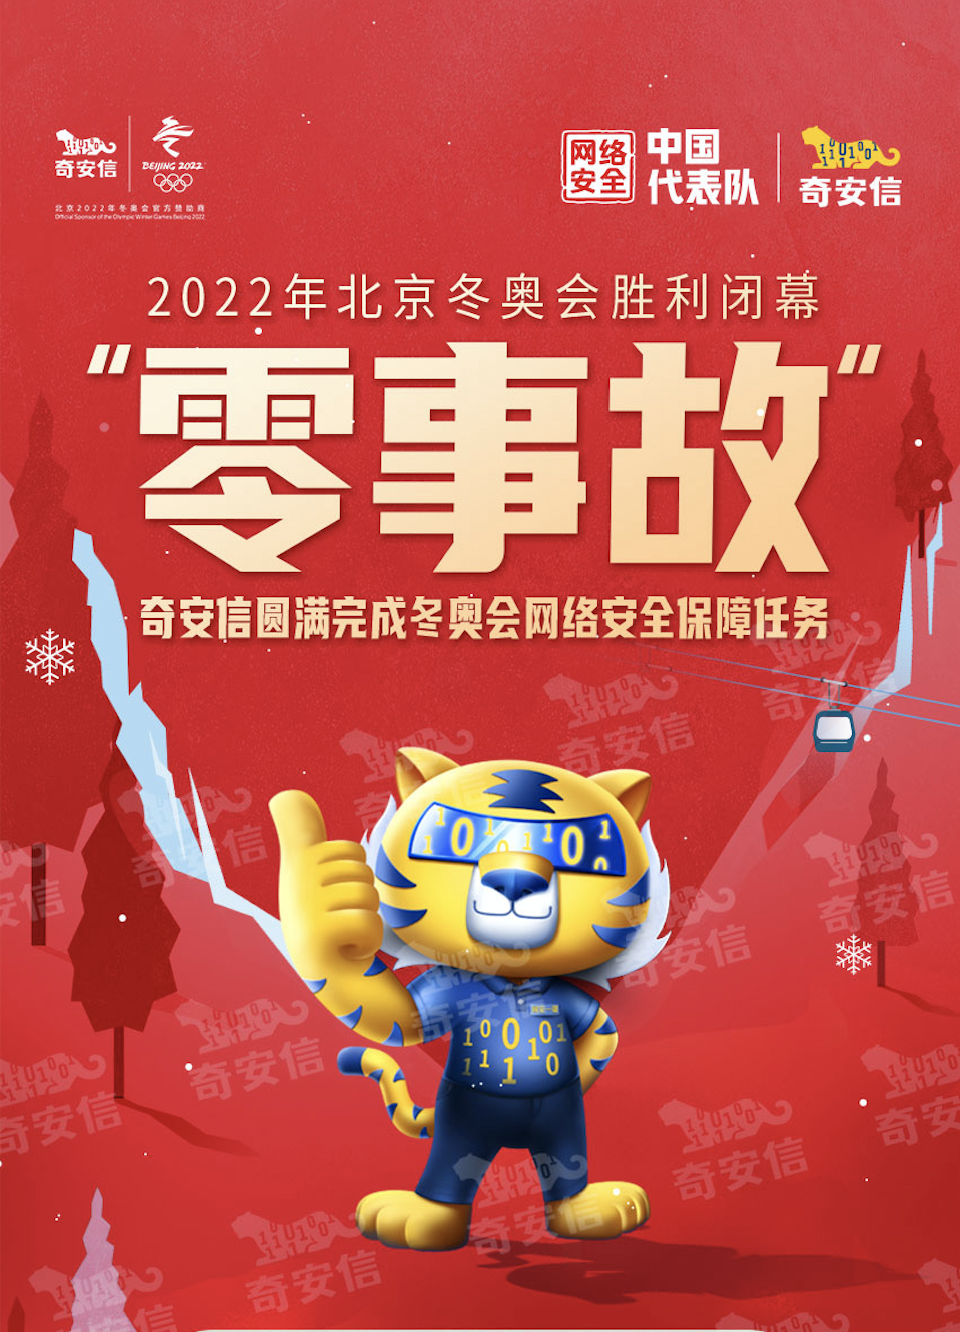 奇安信圓滿完成北京冬奧會網絡安全保障任務